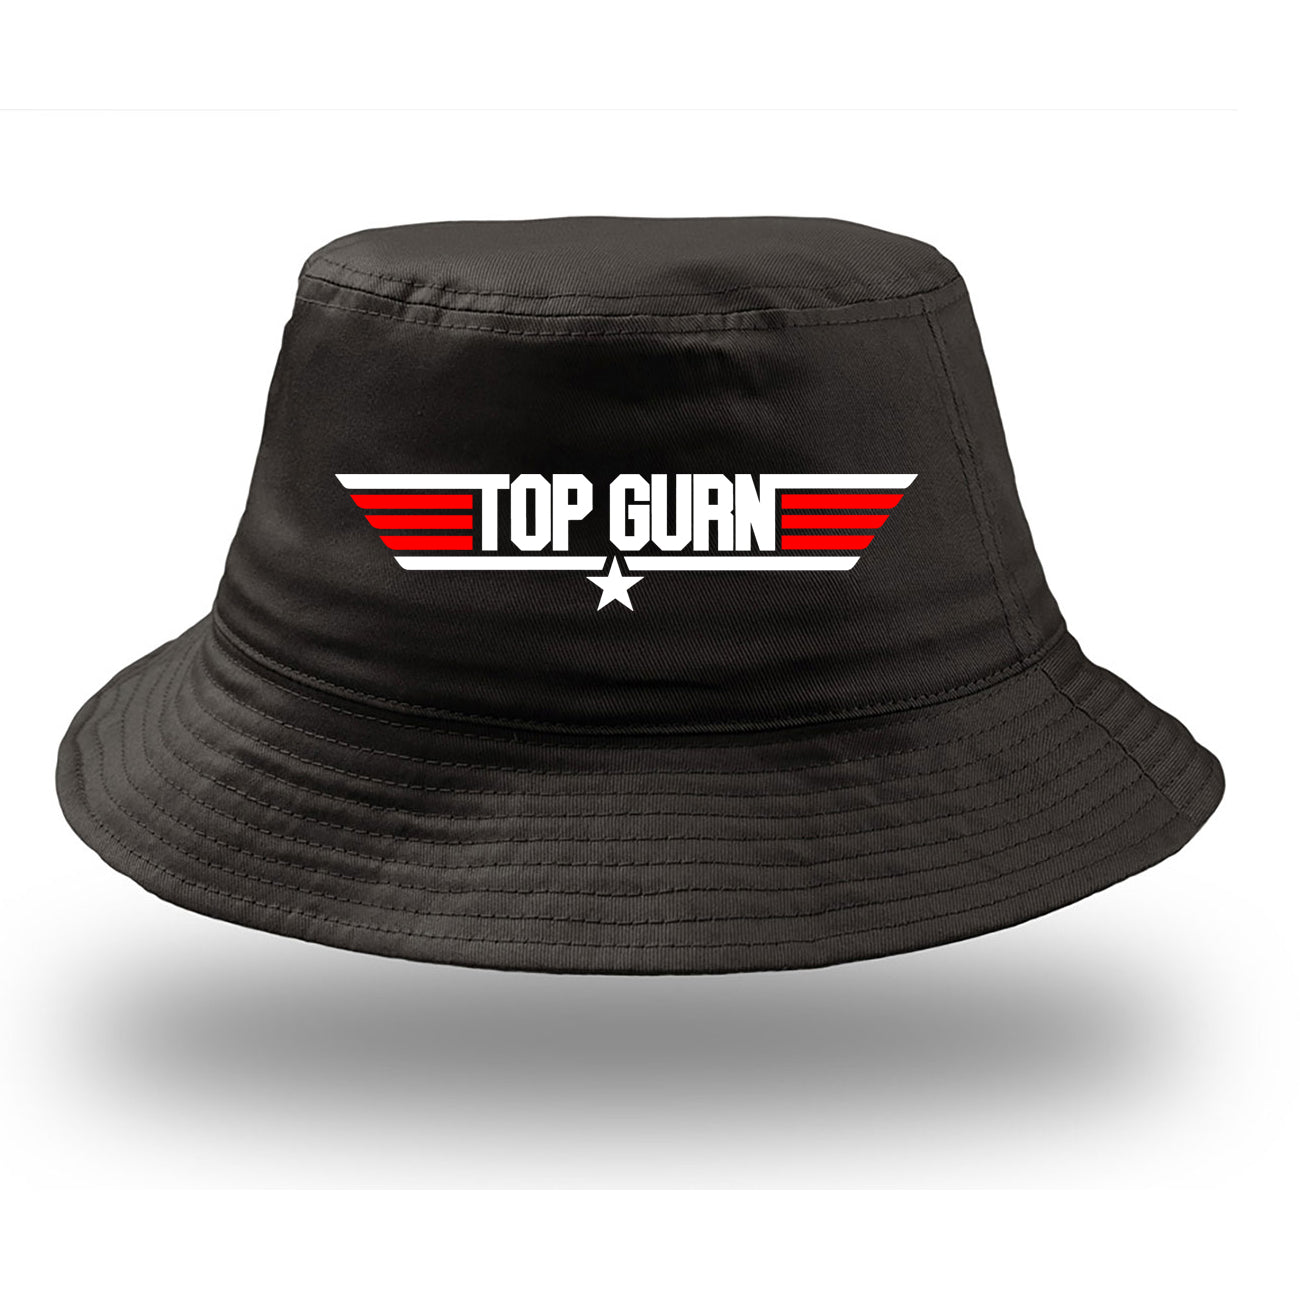 Top Gurn Bucket Hat